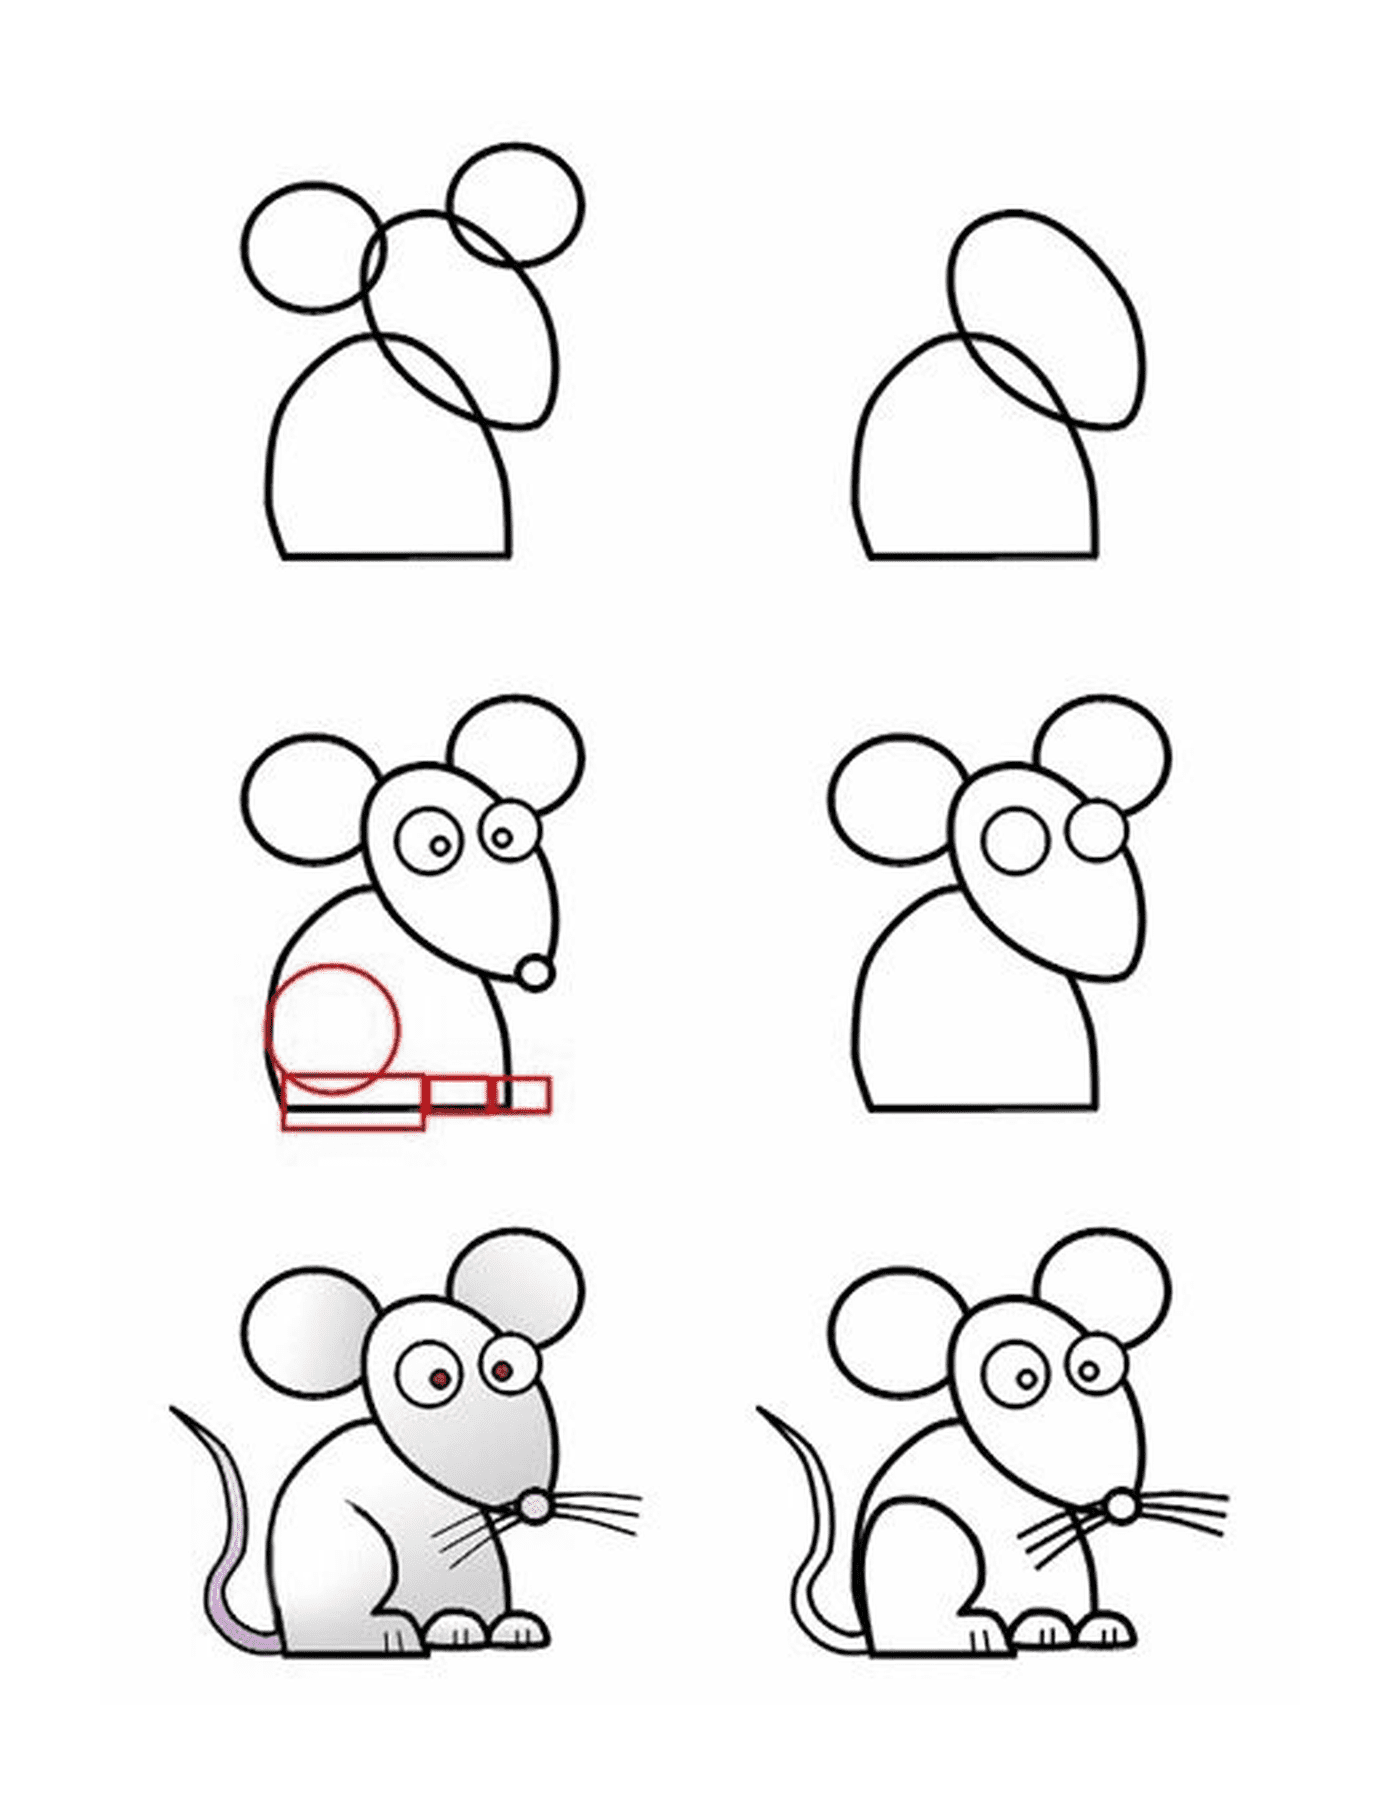   Comment dessiner une souris facilement 